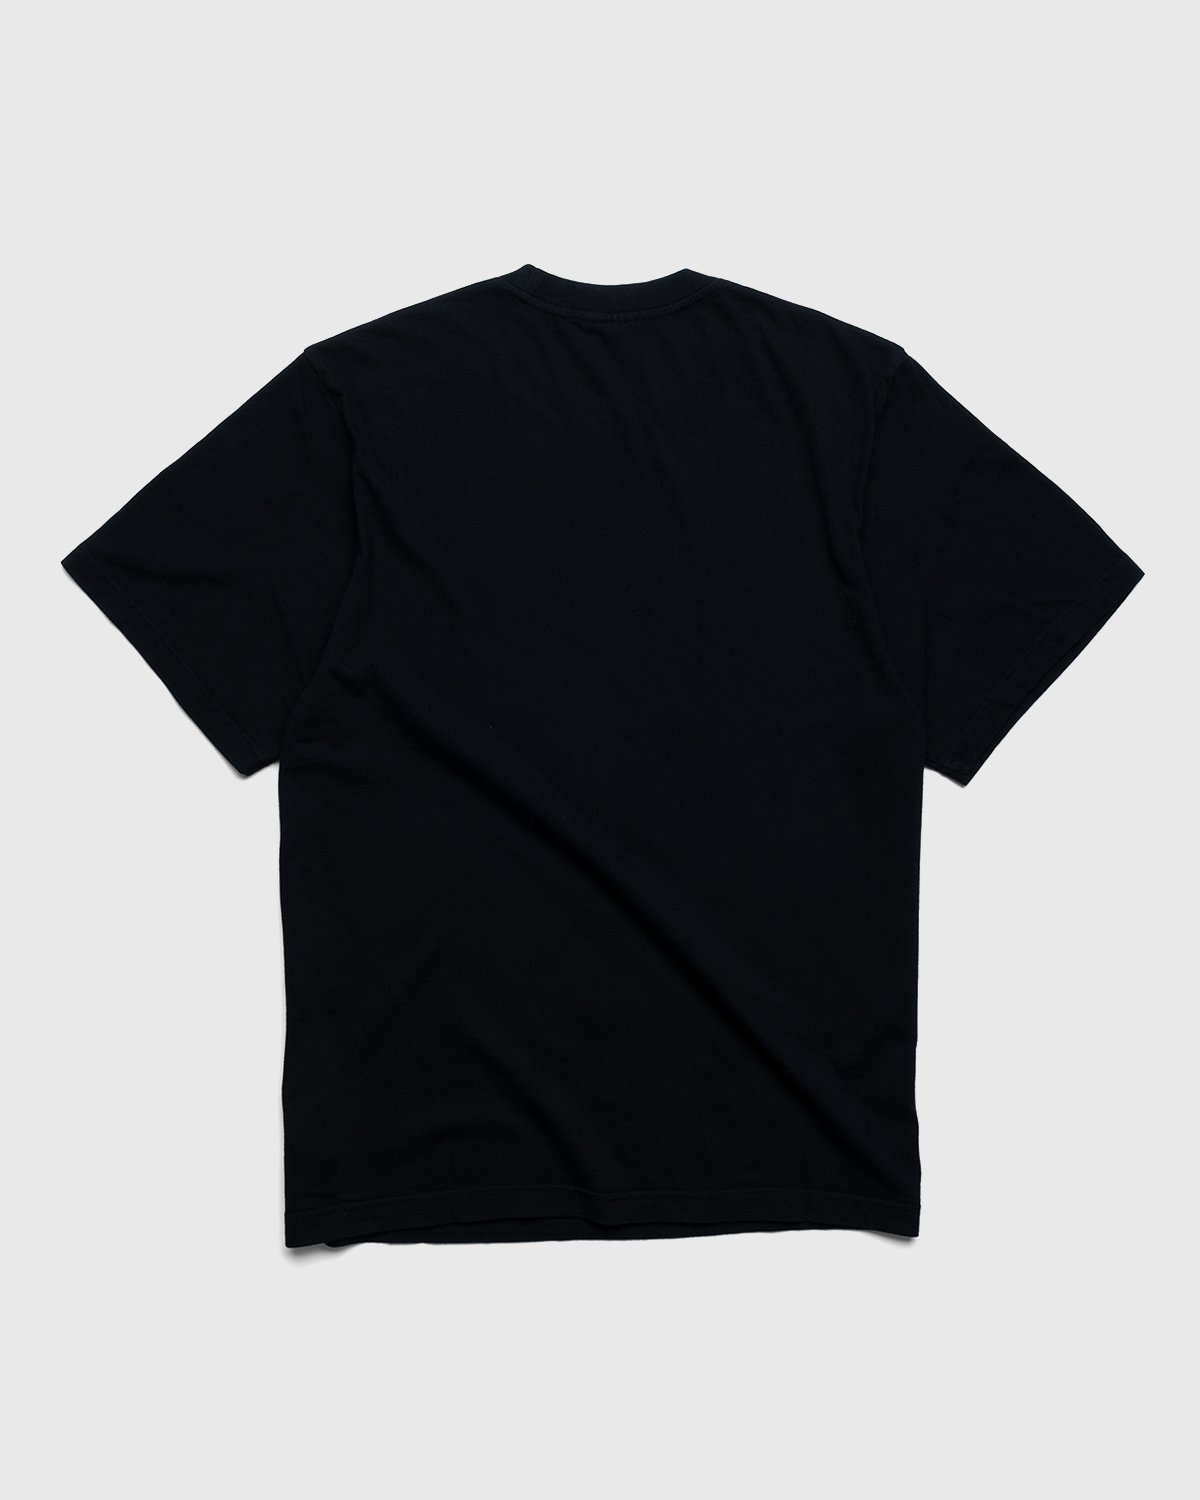 Noon Goons – Sister City T-Shirt Black - Tops - Black - Image 2